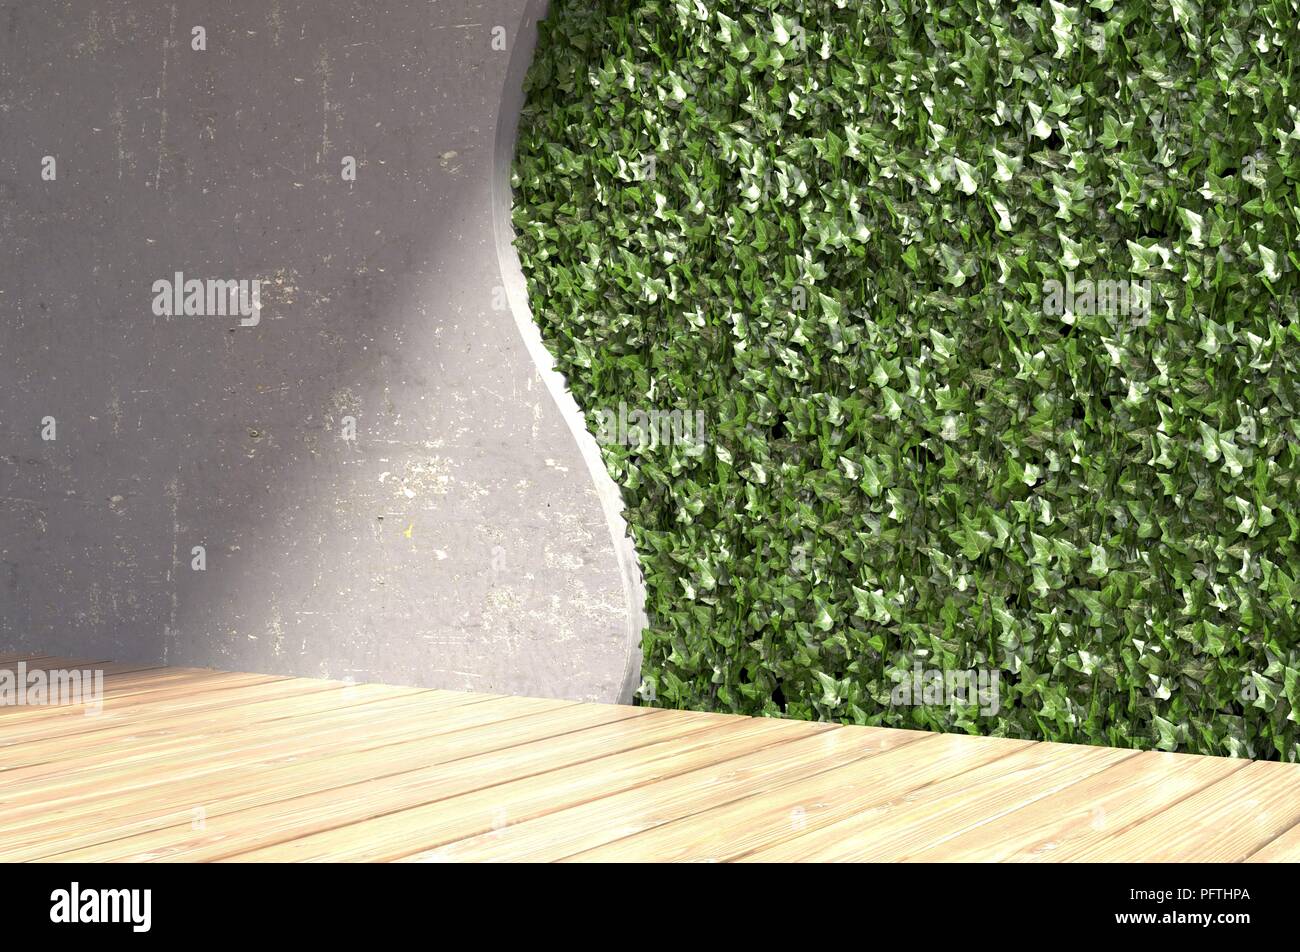 Mur de béton avec feuilles vertes dans un intérieur moderne. 3D illustration. Banque D'Images